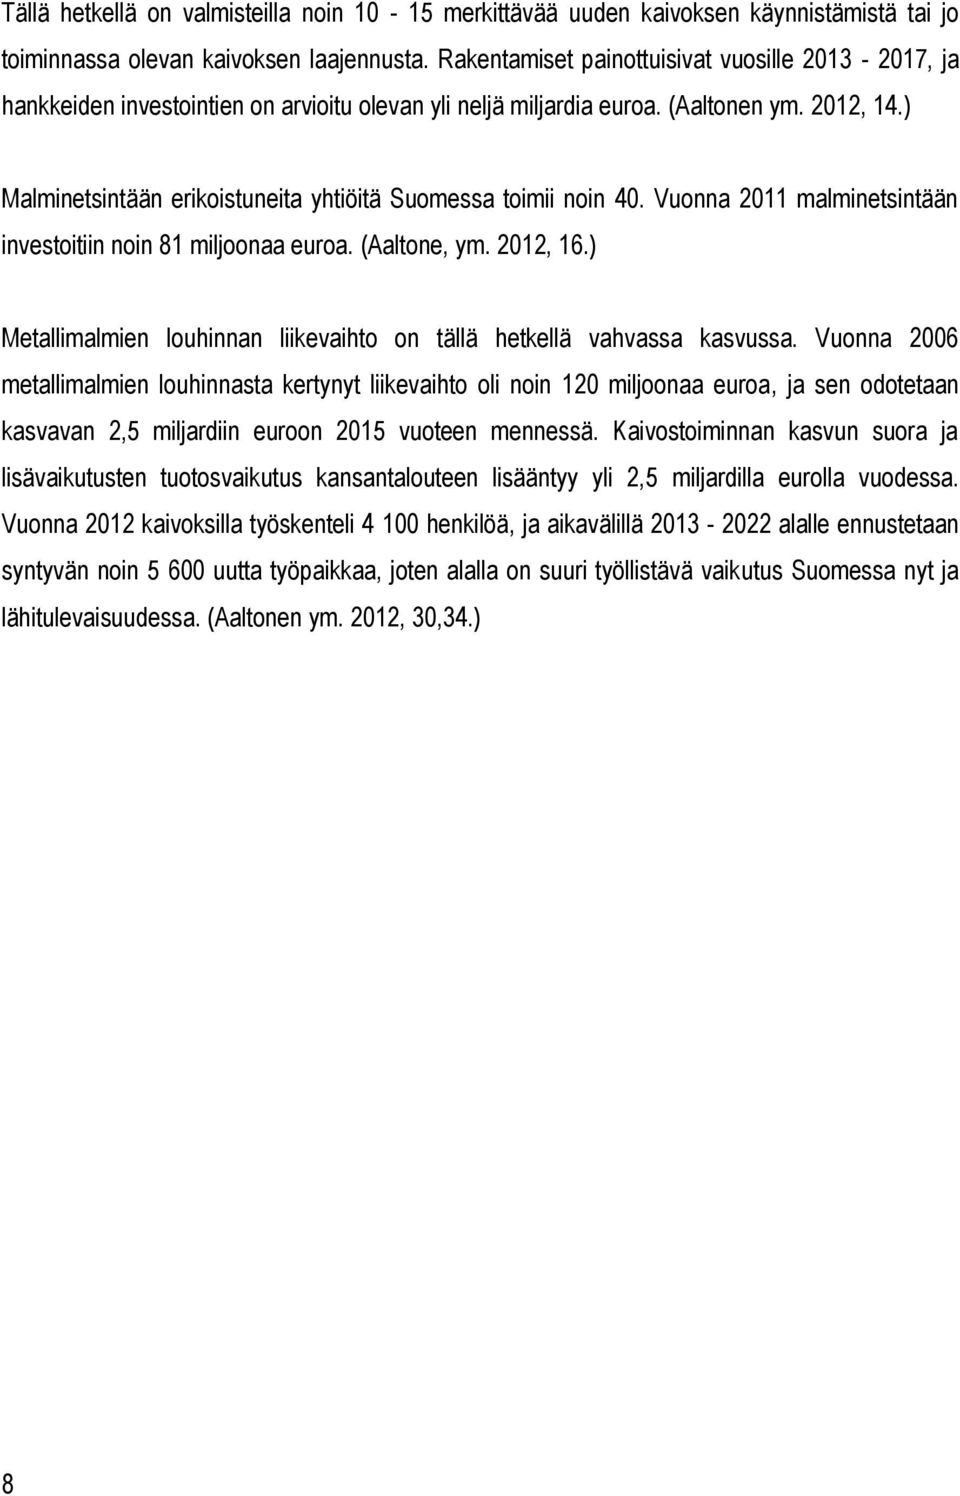 ) Malminetsintään erikoistuneita yhtiöitä Suomessa toimii noin 40. Vuonna 2011 malminetsintään investoitiin noin 81 miljoonaa euroa. (Aaltone, ym. 2012, 16.